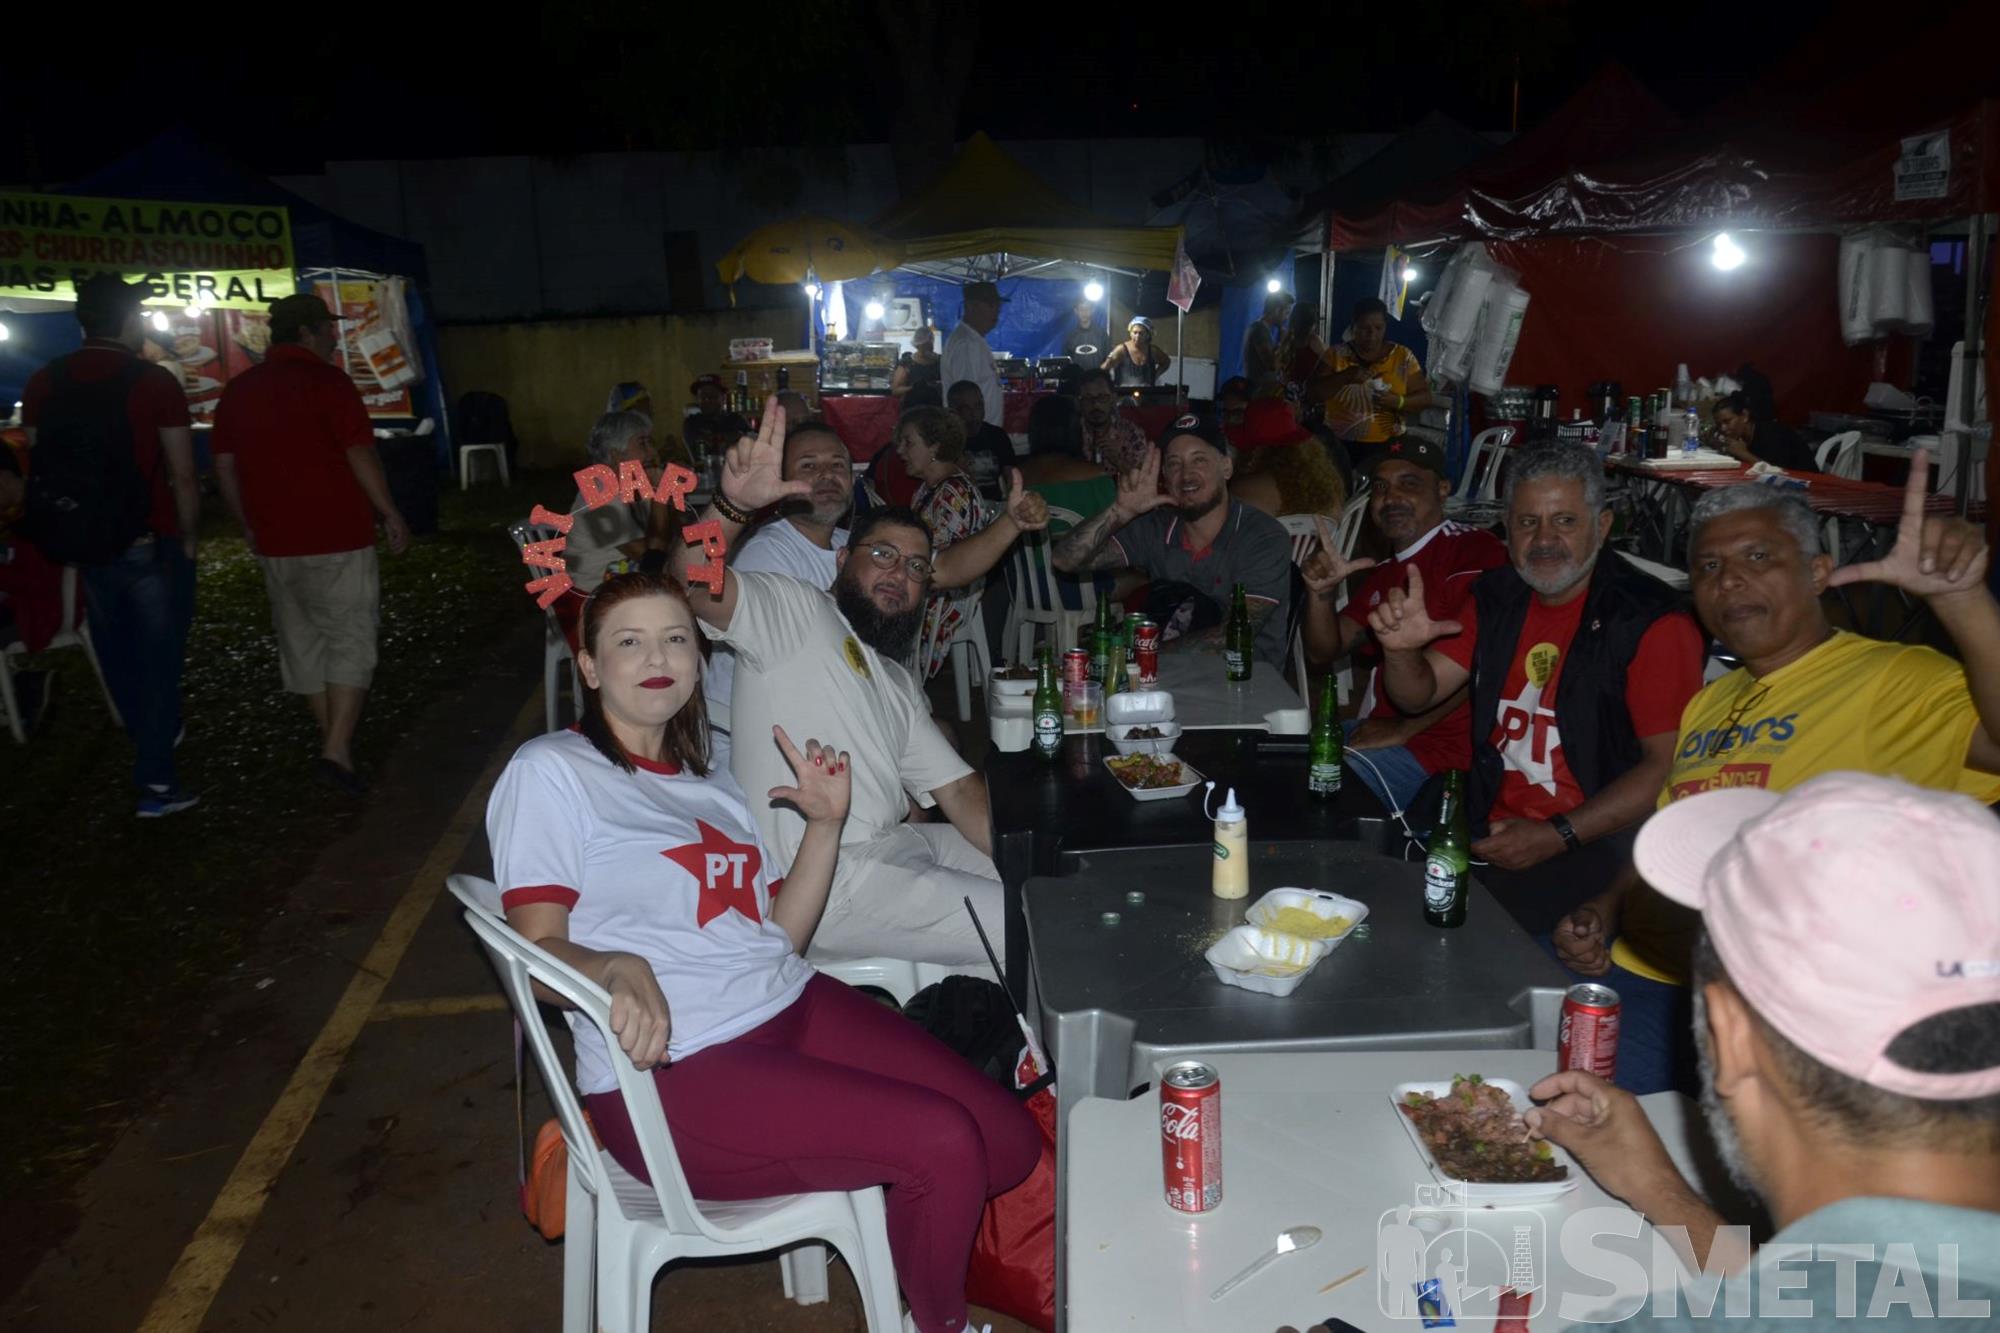 Vagner Santos , Diretores do SMetal e militantes participam da posse de Lula; veja as fotos